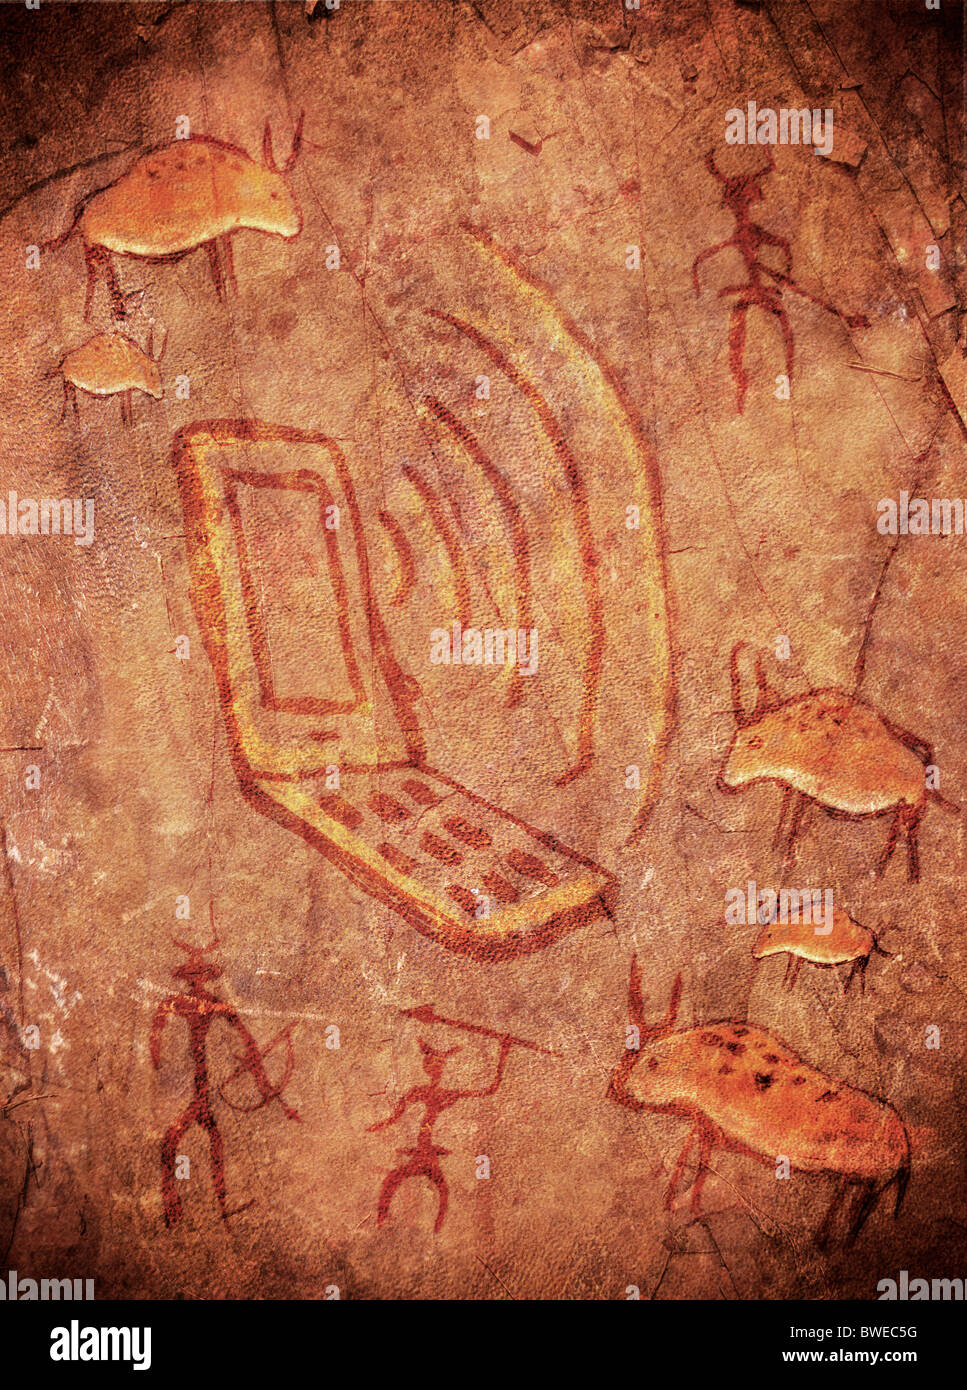 Grotte préhistorique peindre avec des chasseurs d'animaux et téléphone mobile Banque D'Images